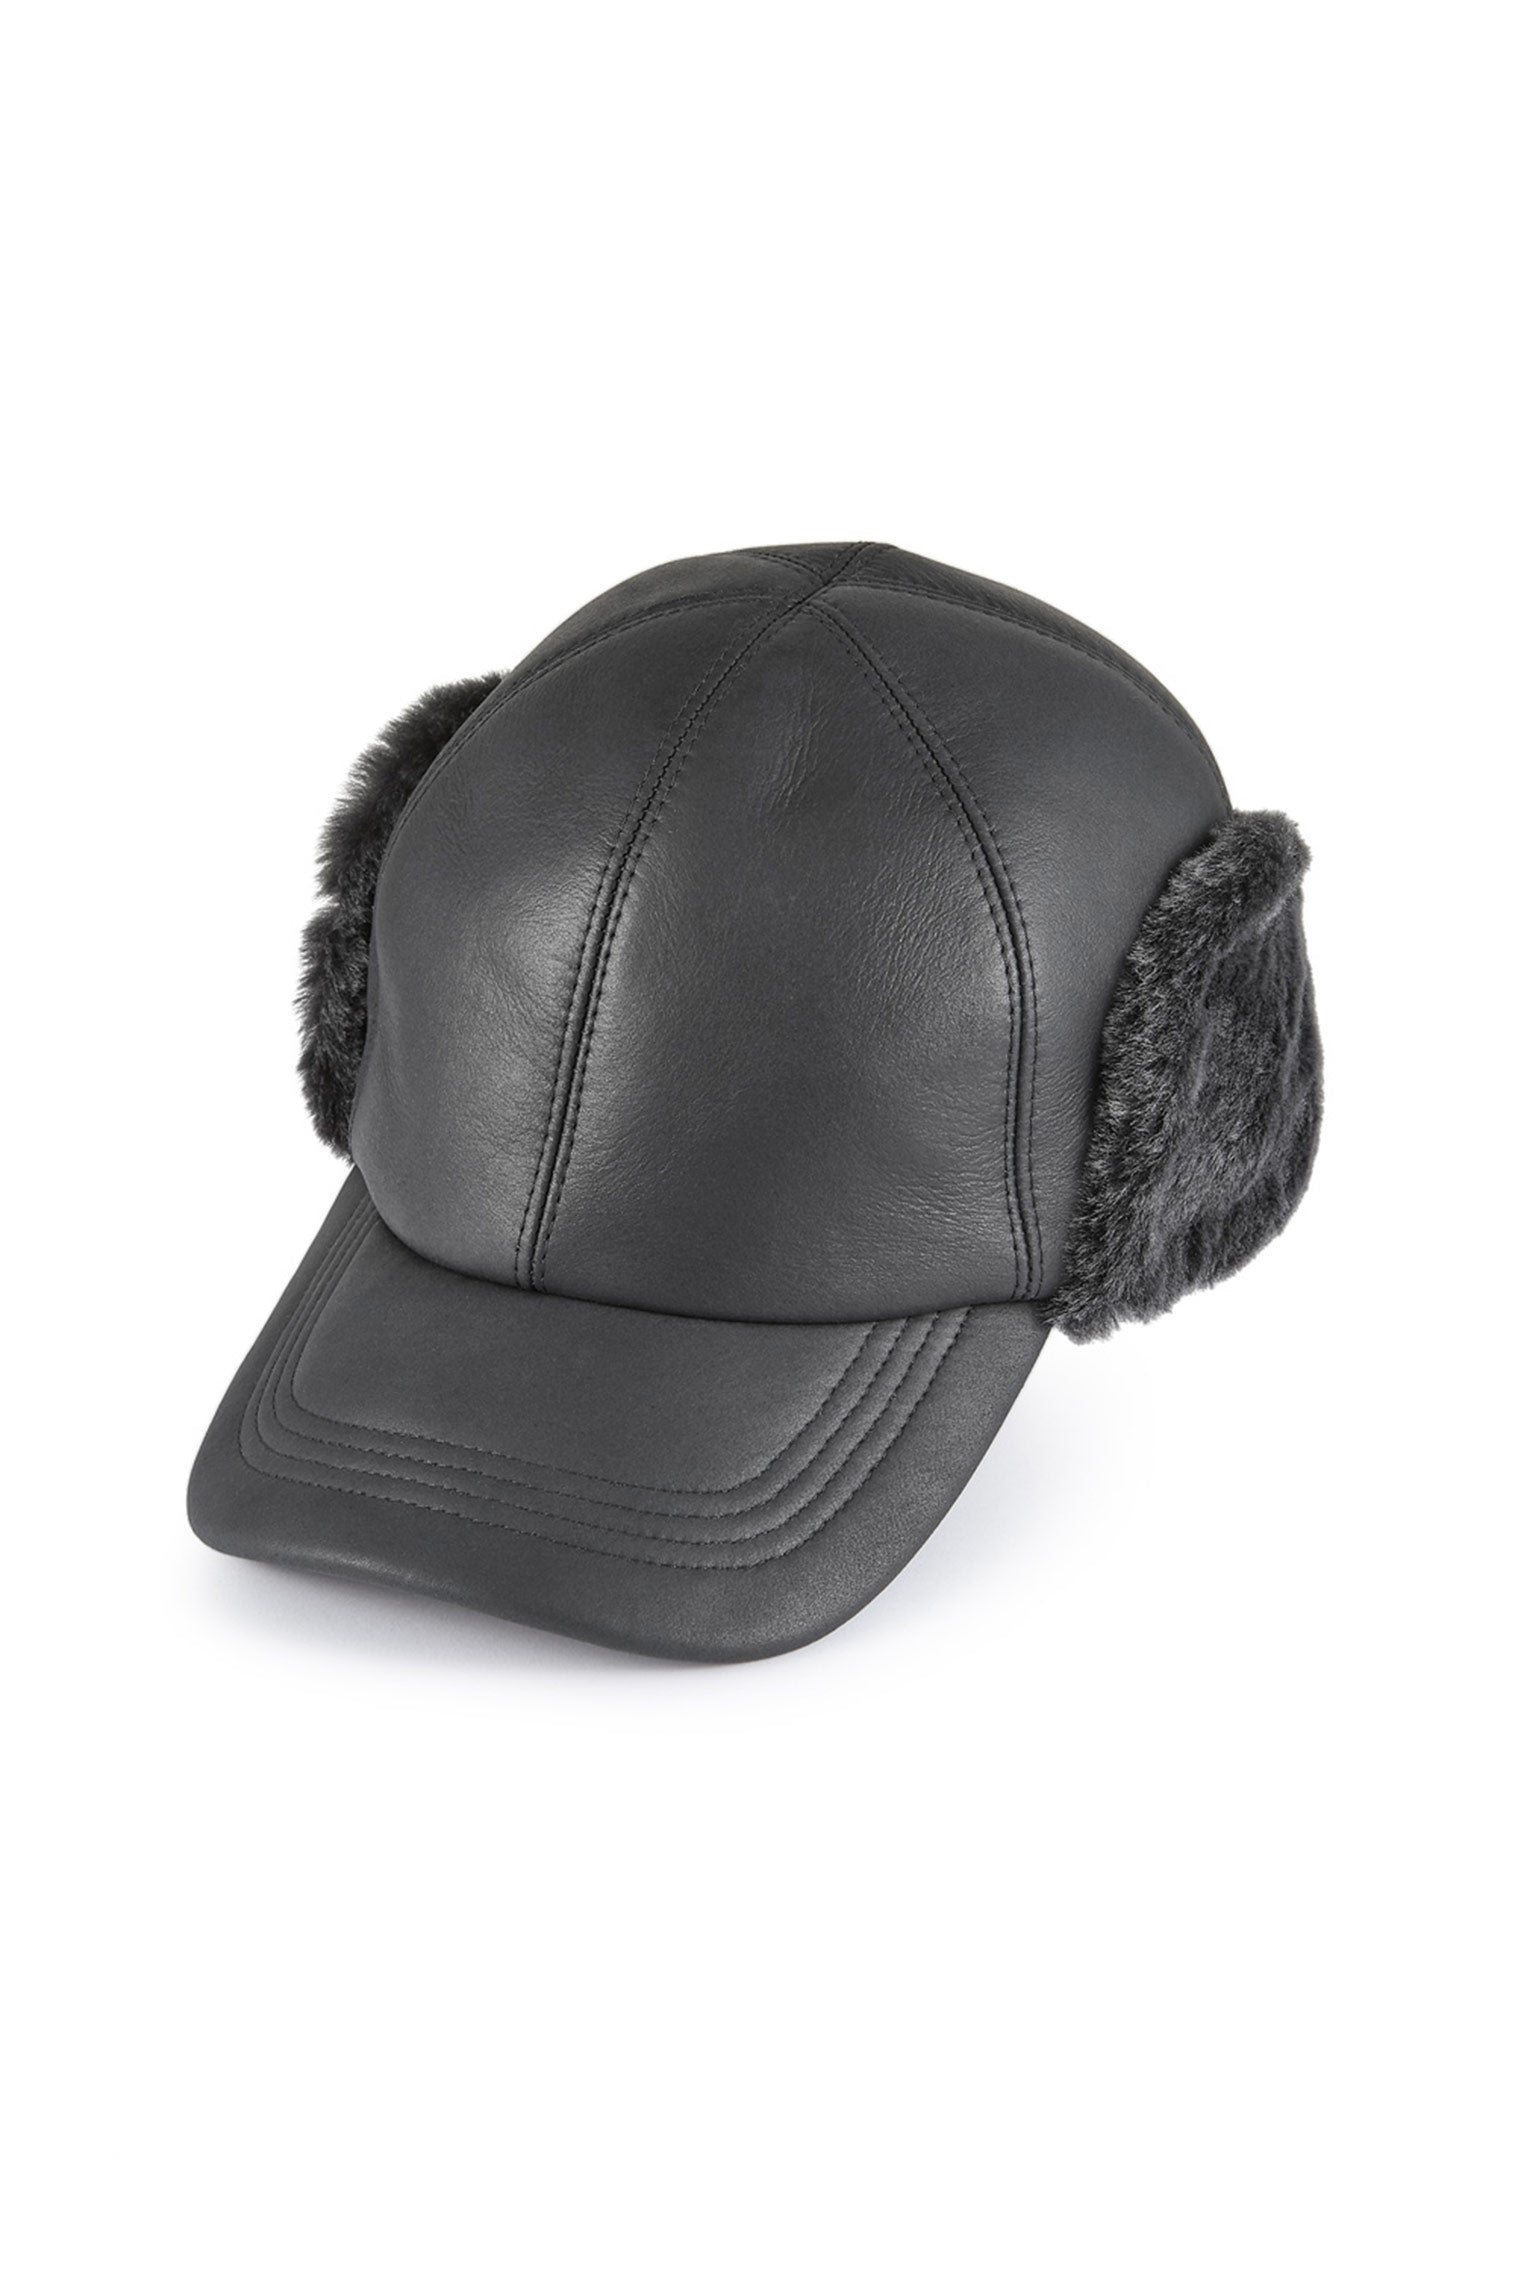 Winnipeg Sheepskin Baseball Cap - Winter Hats - Lock & Co. Hatters London UK